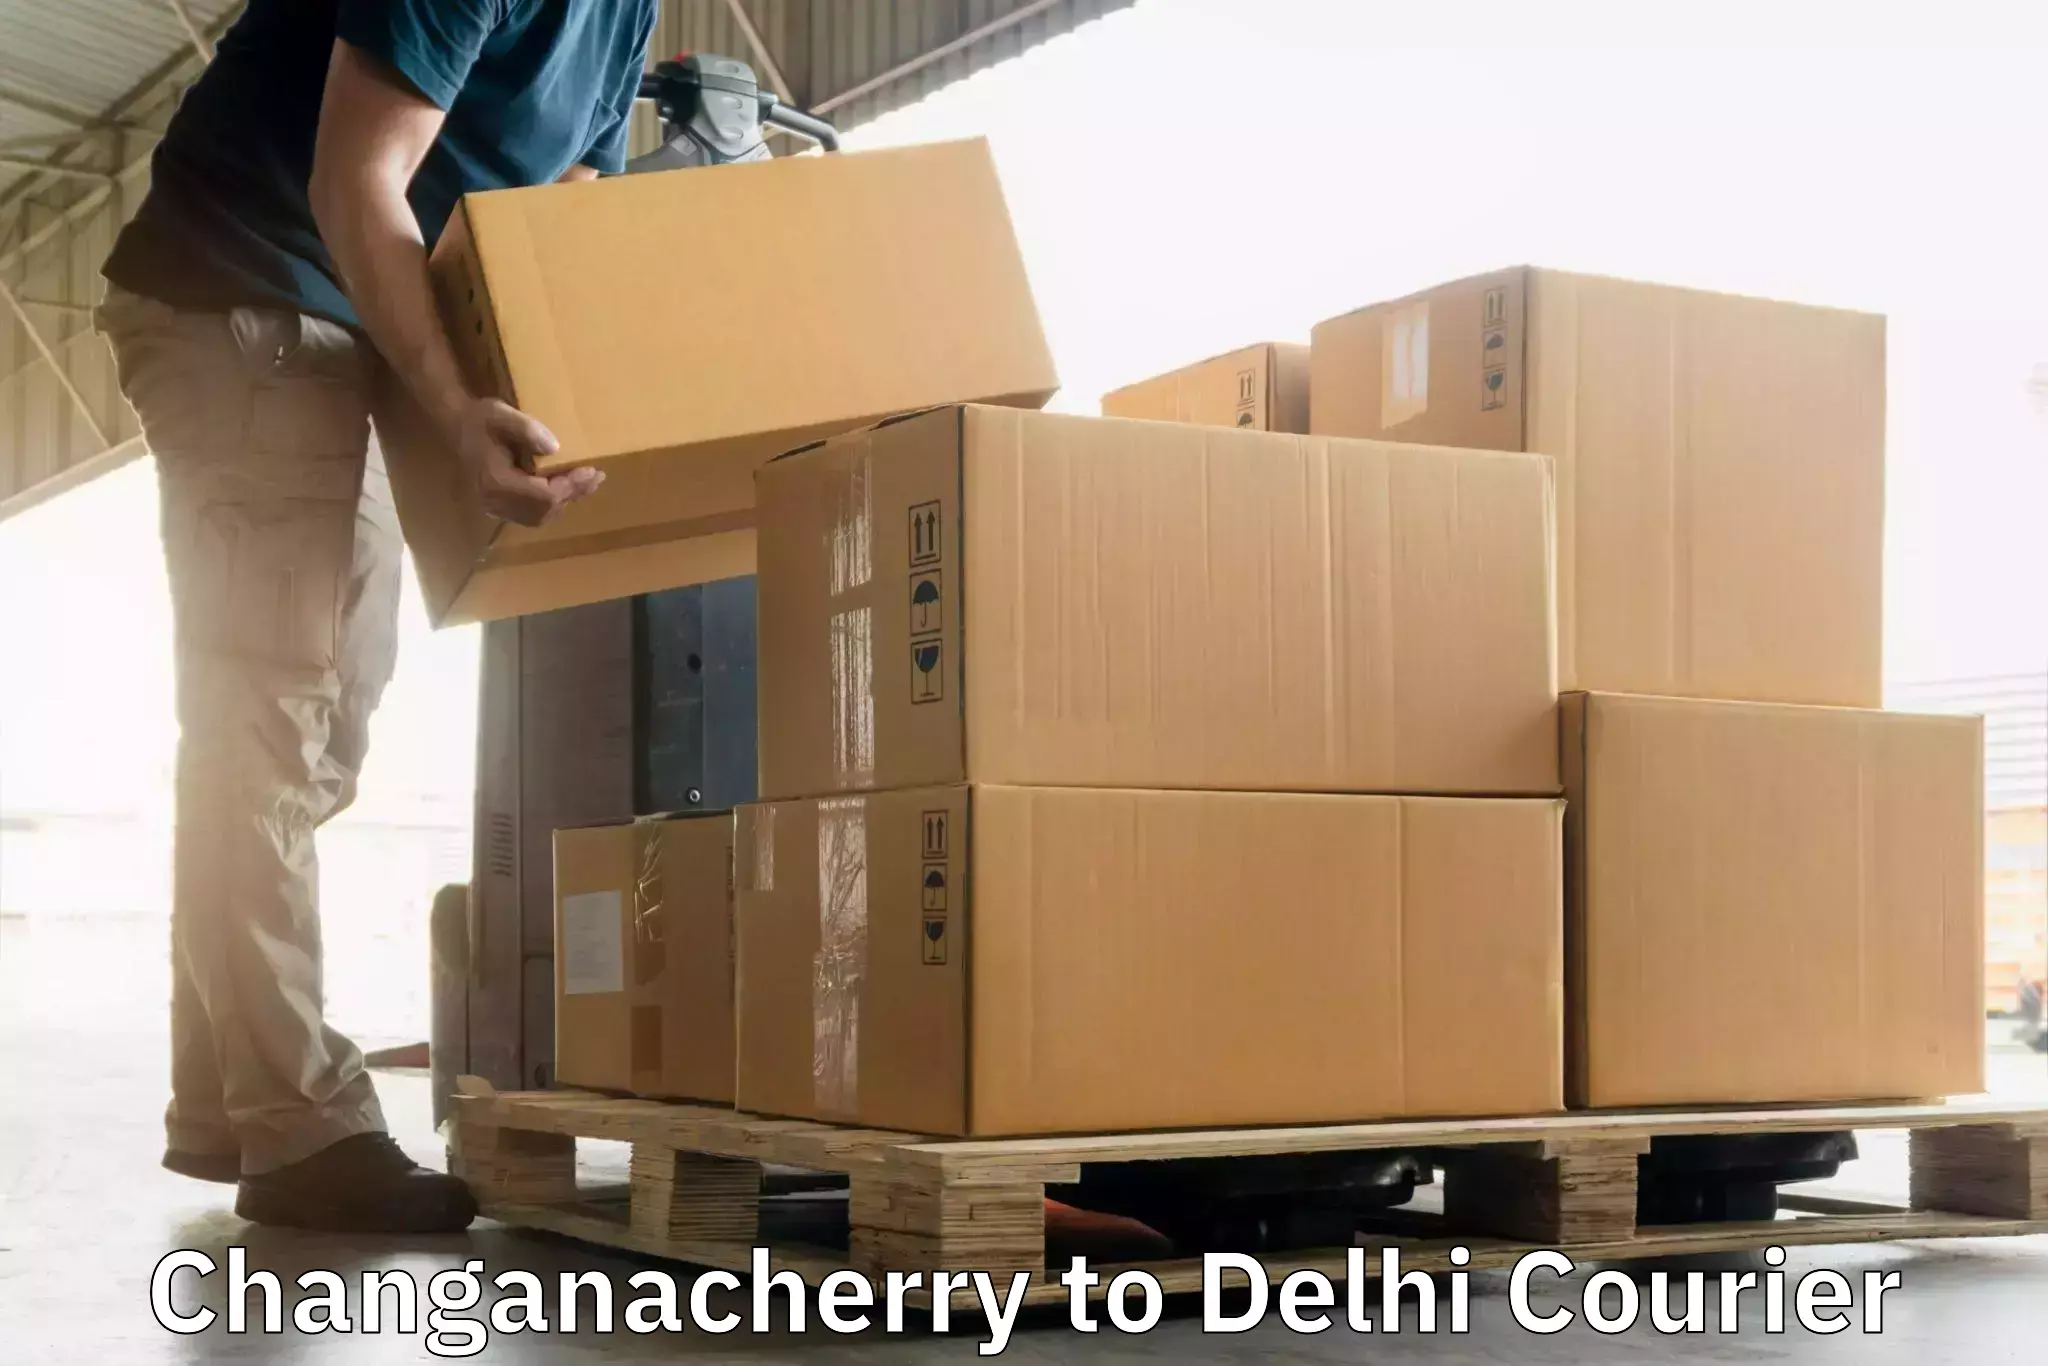 Reliable parcel services Changanacherry to NIT Delhi